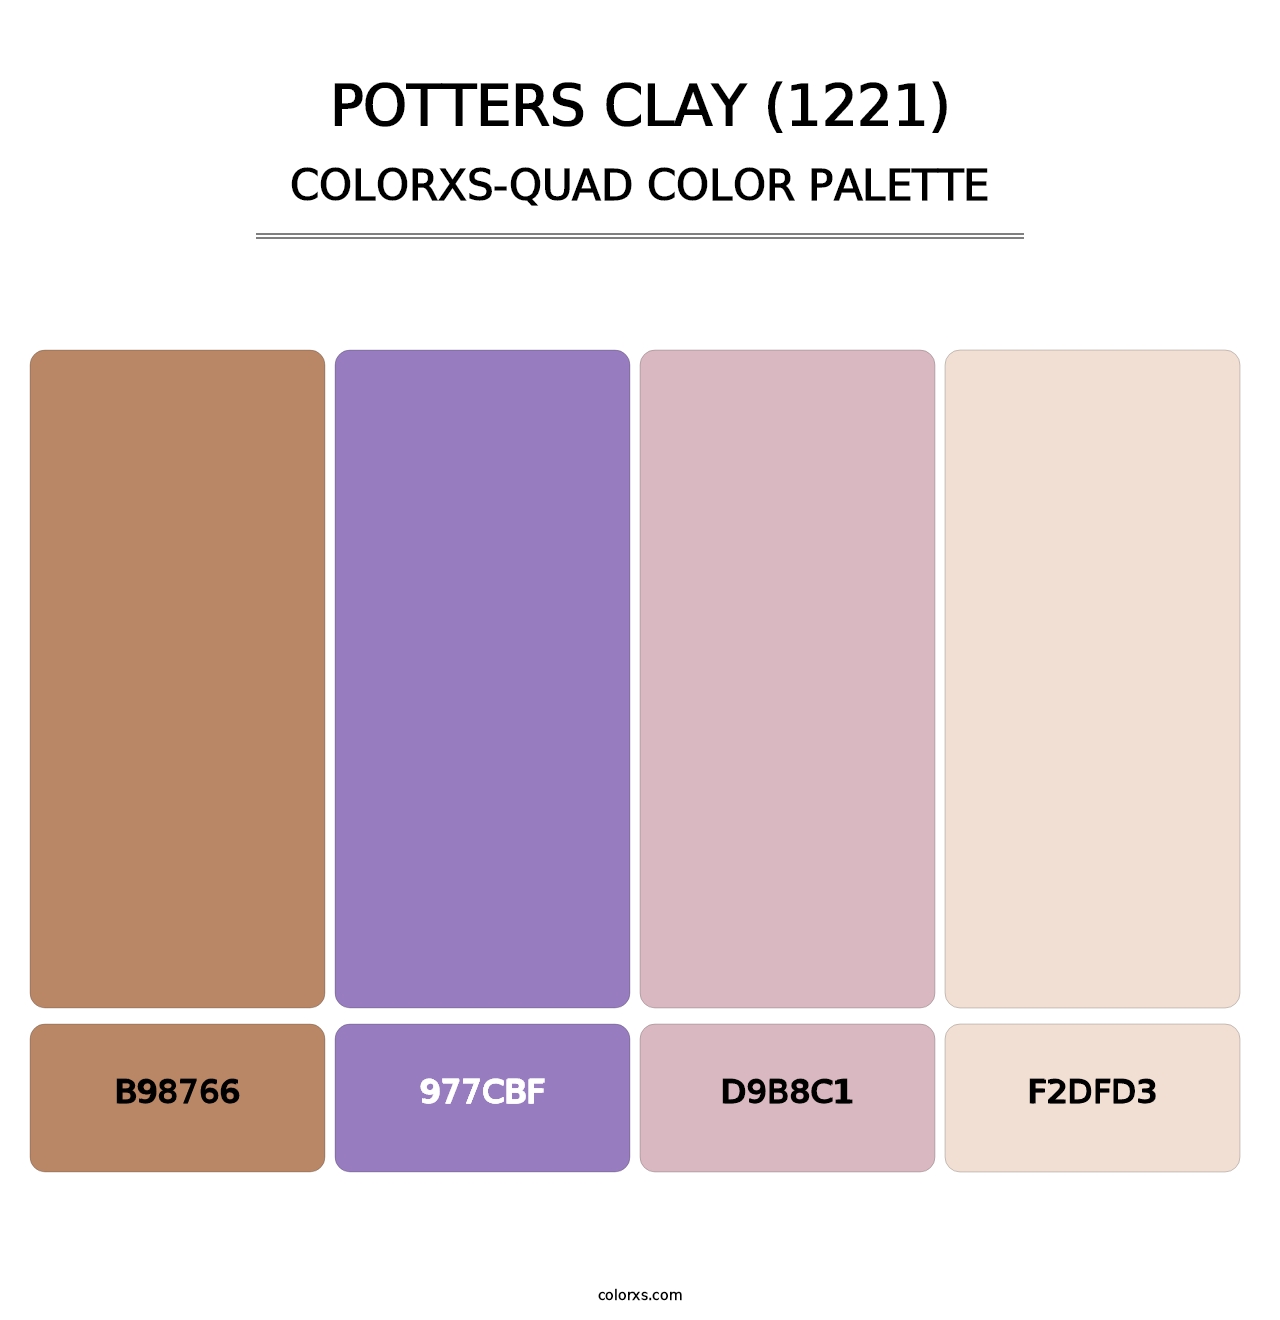 Potters Clay (1221) - Colorxs Quad Palette